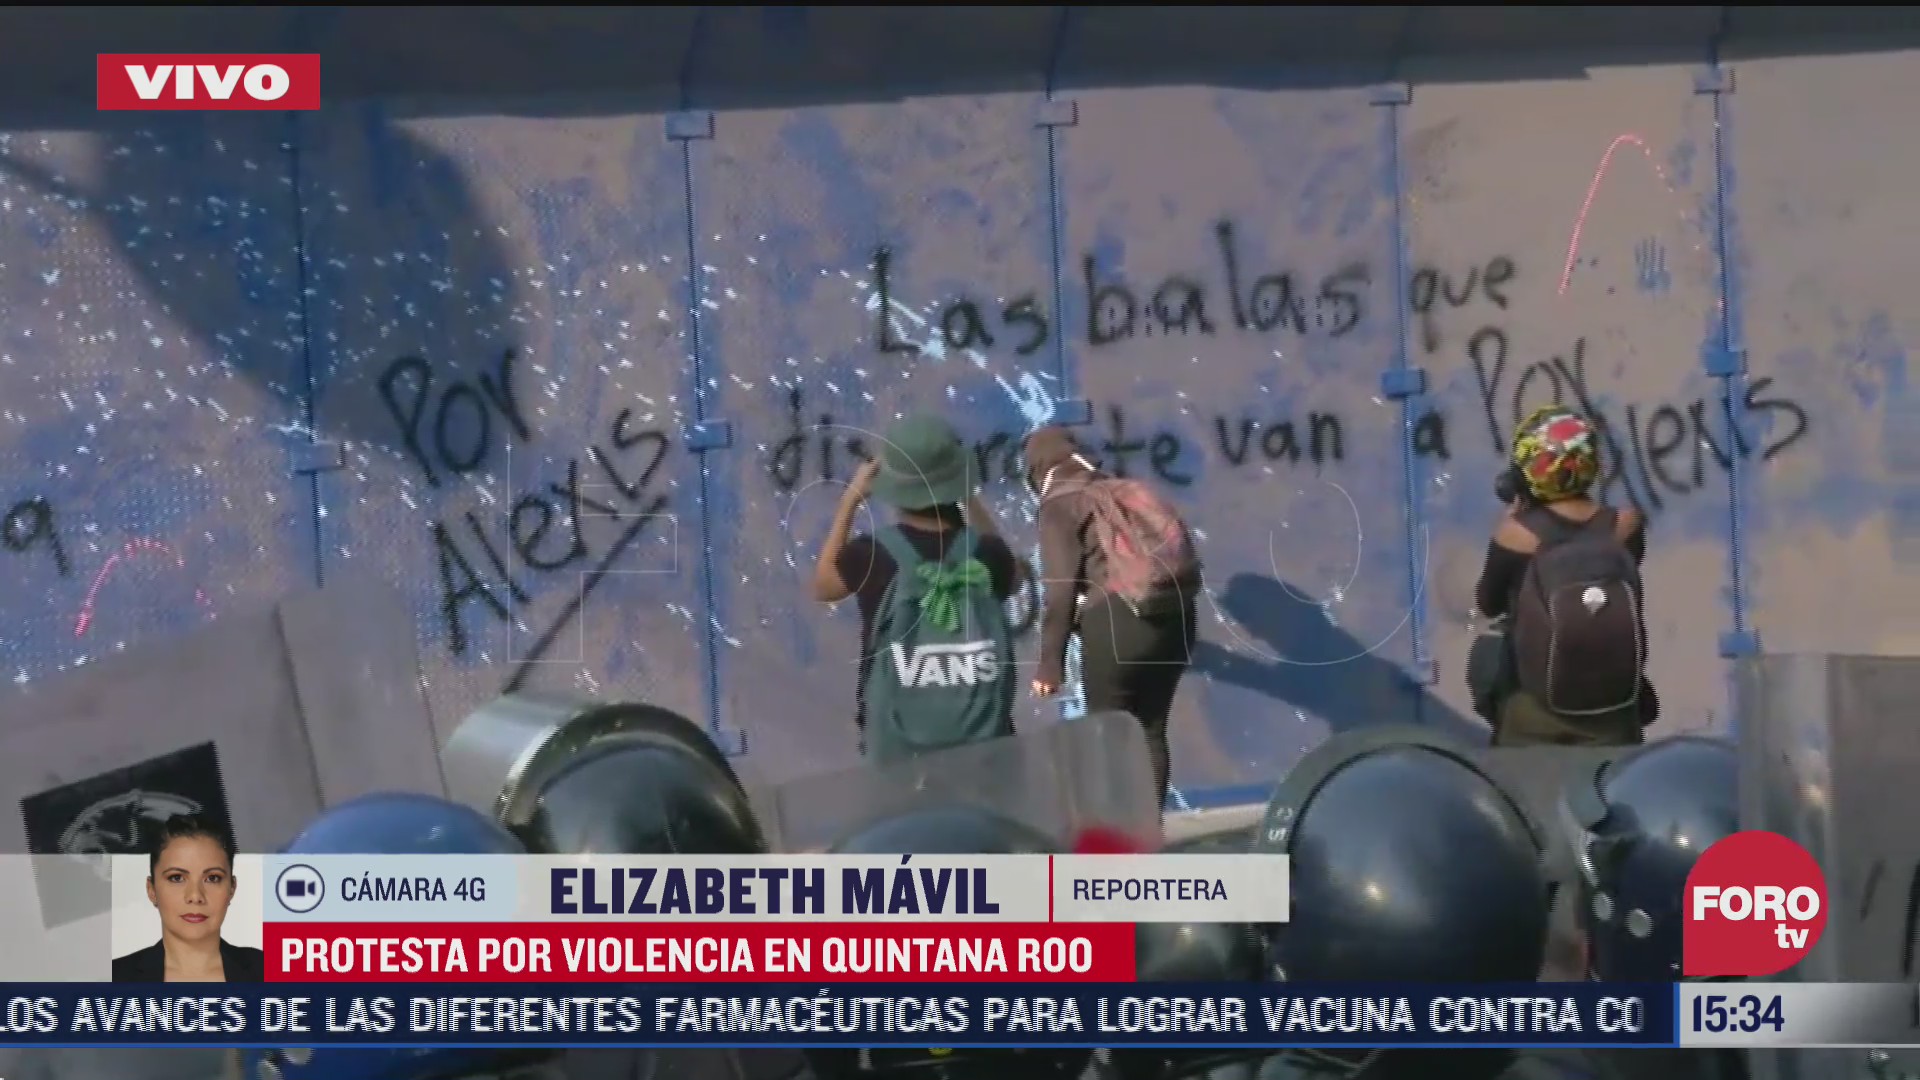 feministas arrojan liquidos y pintura a policias durante marcha por alexis